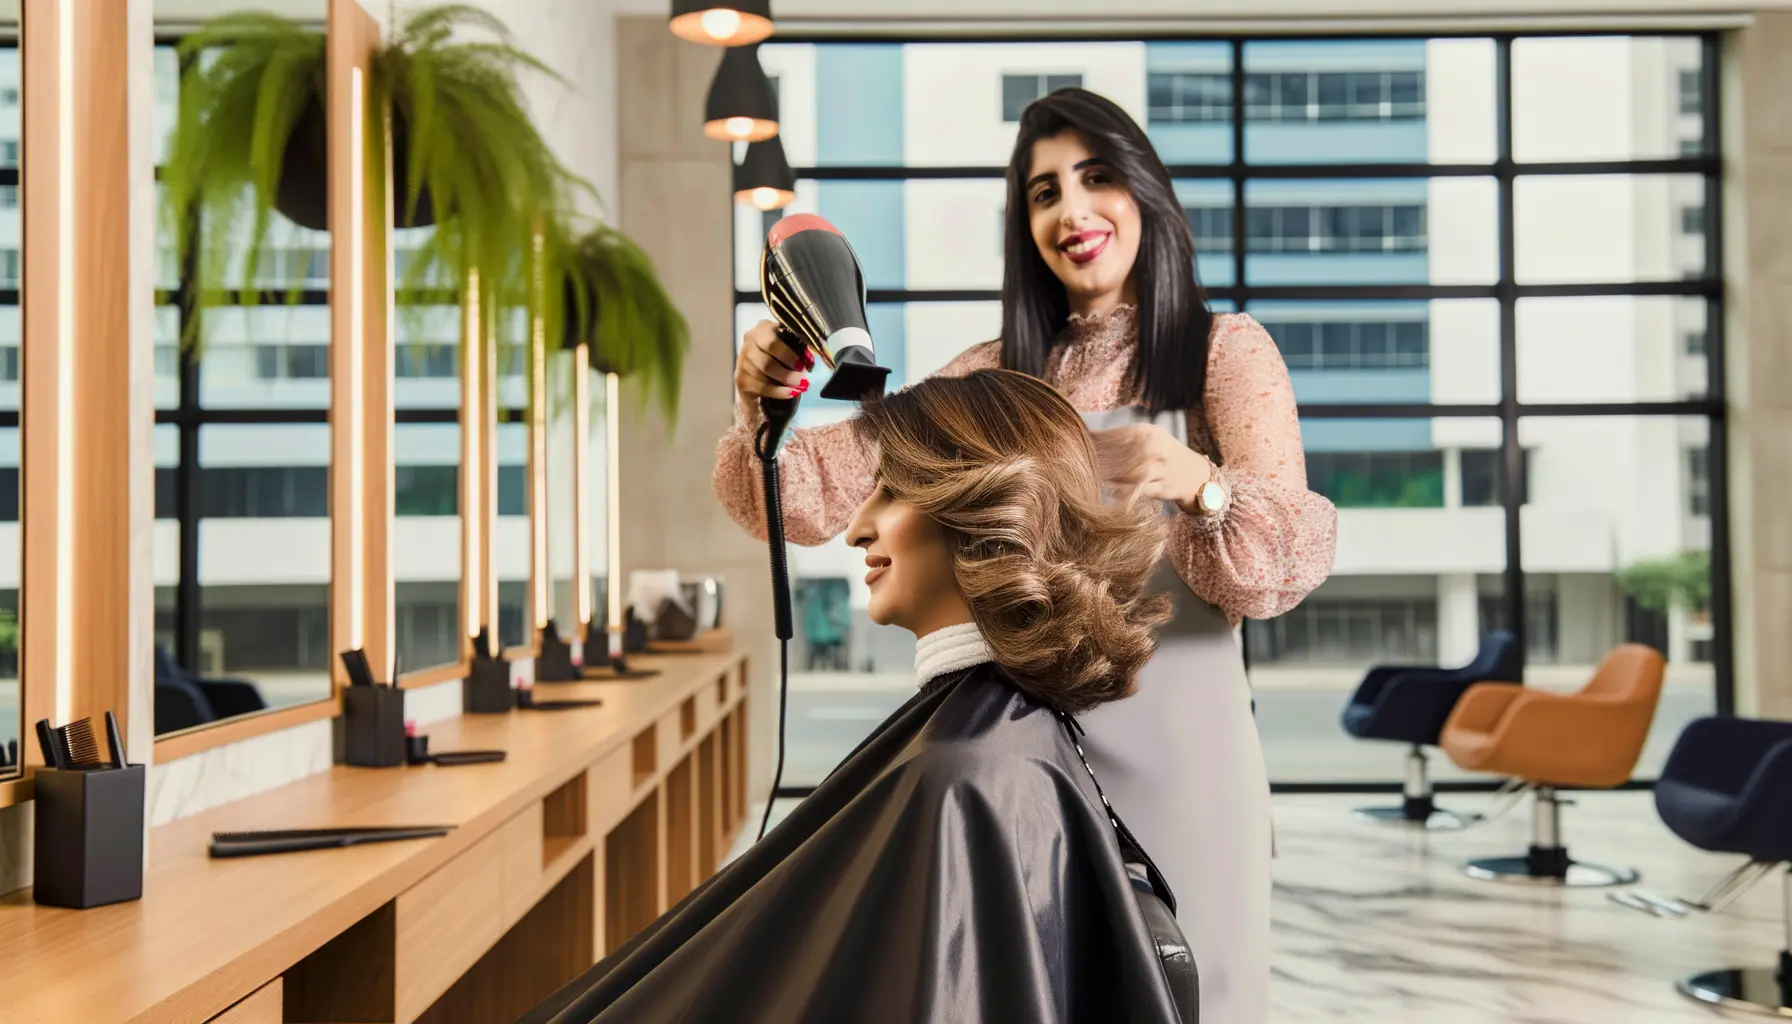 Innovatives Design trifft auf hocheffiziente Haarpflege im modernen Salon.